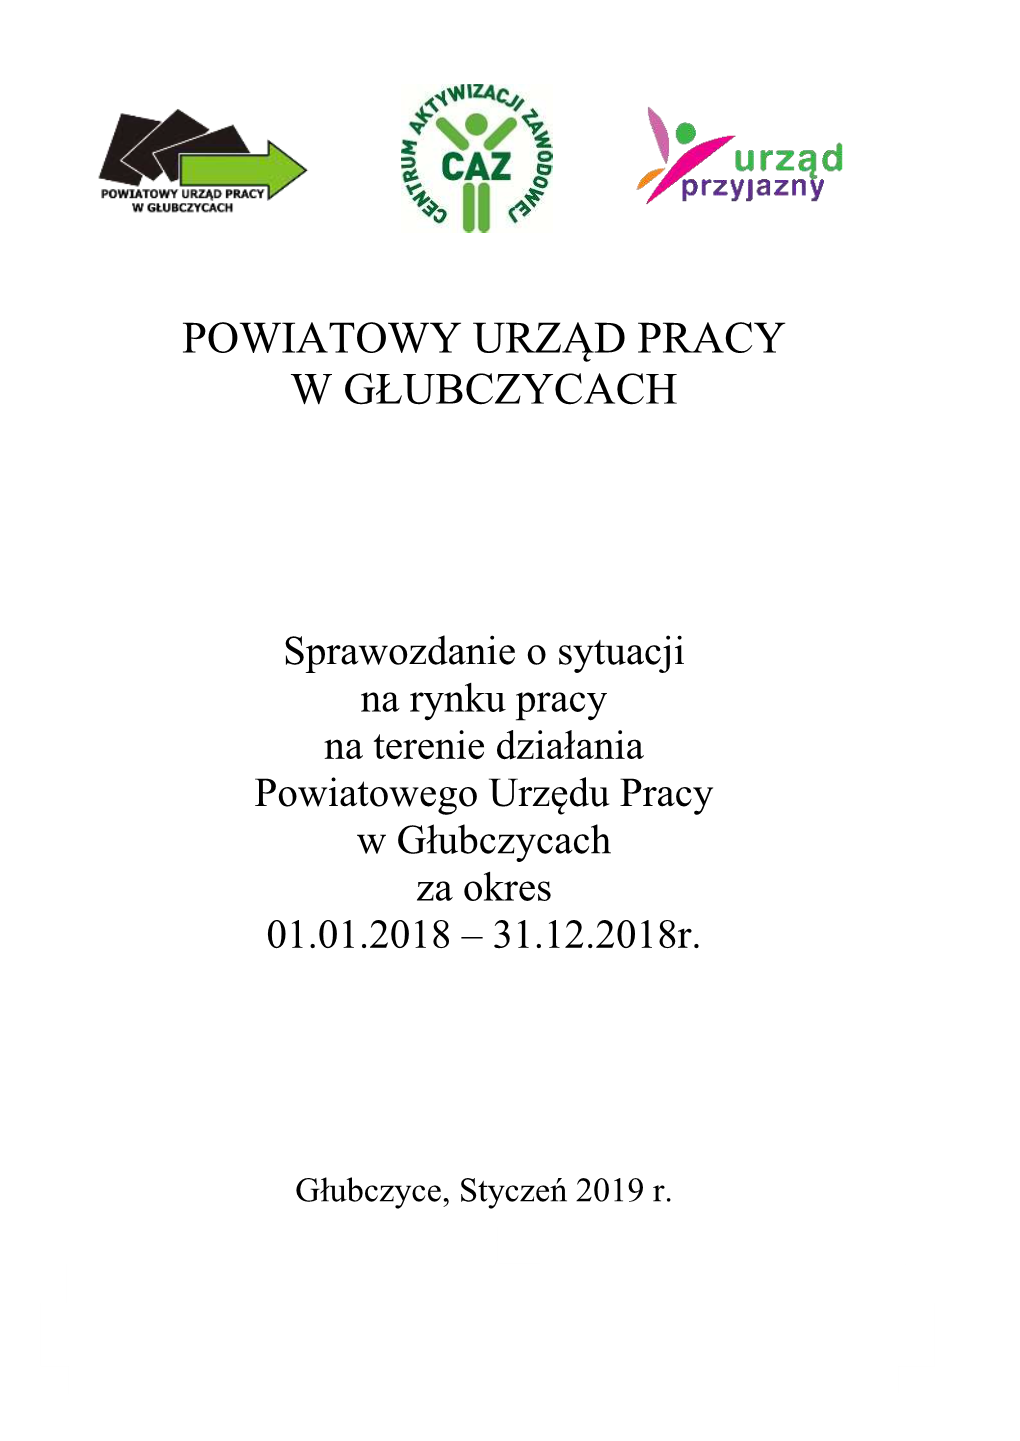 Głubczyce, Styczeń 2019 R